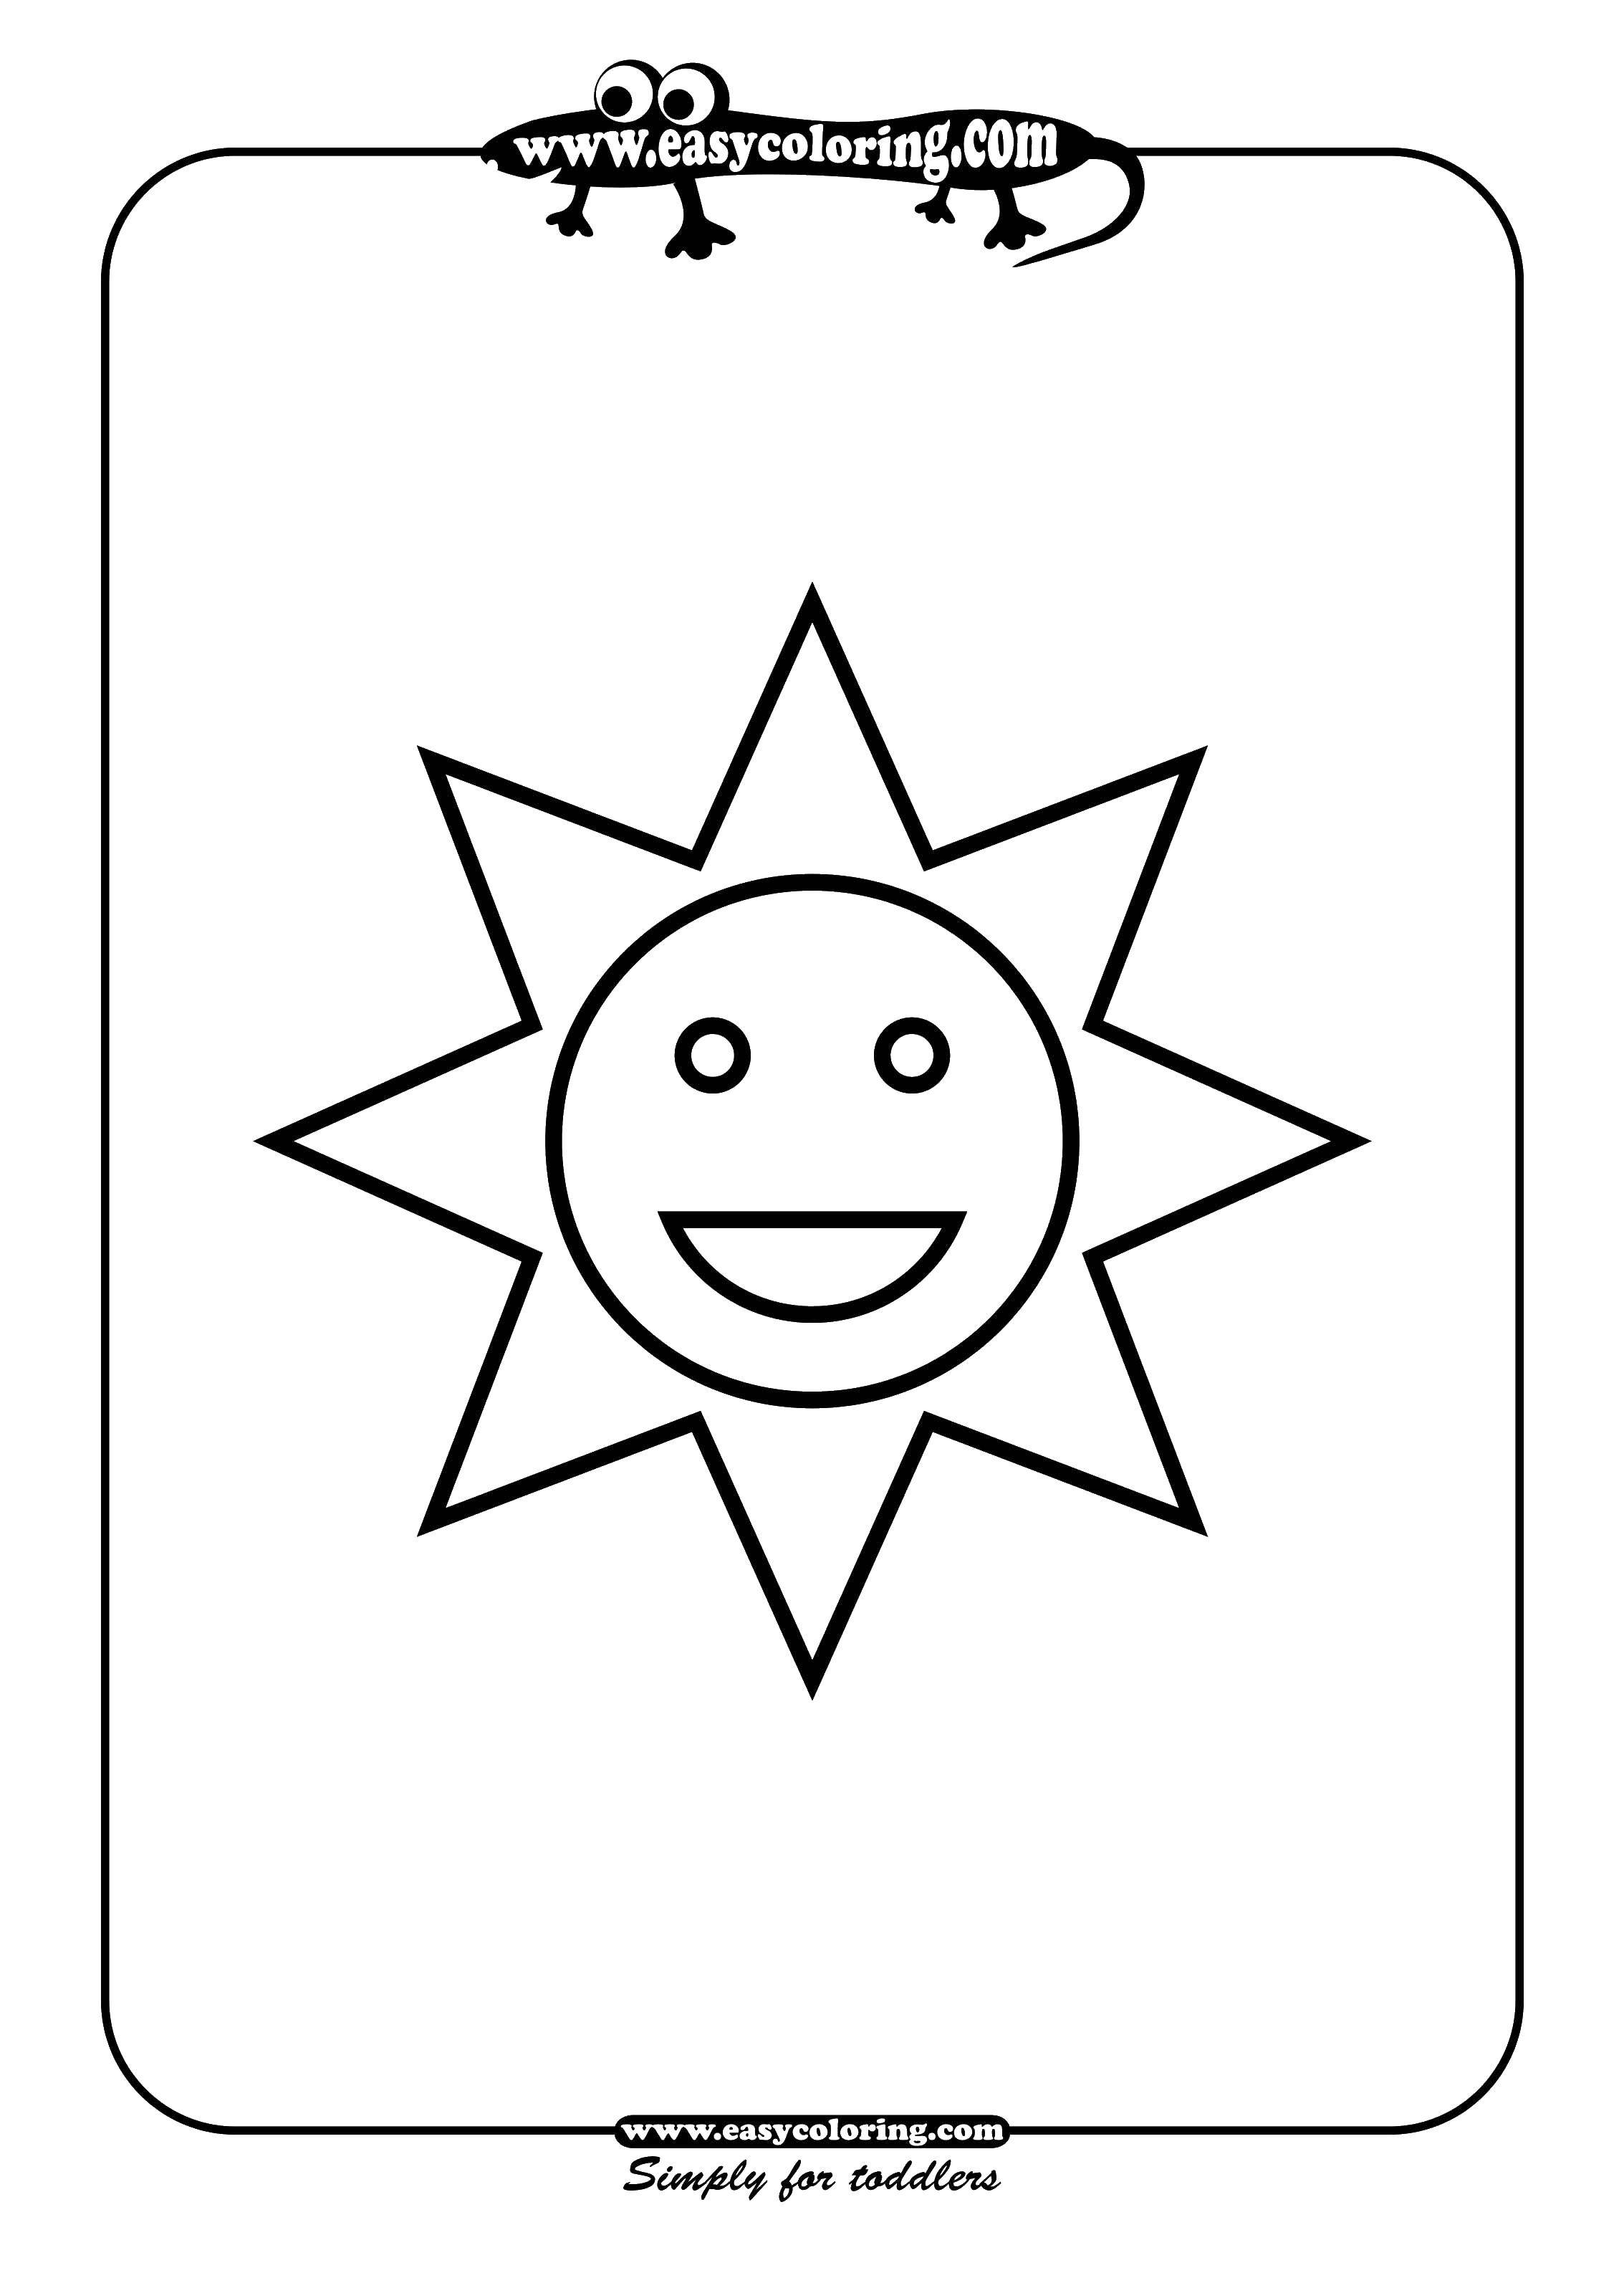 Раскраски Солнышко для детей — Скачать или Распечатать бесплатно